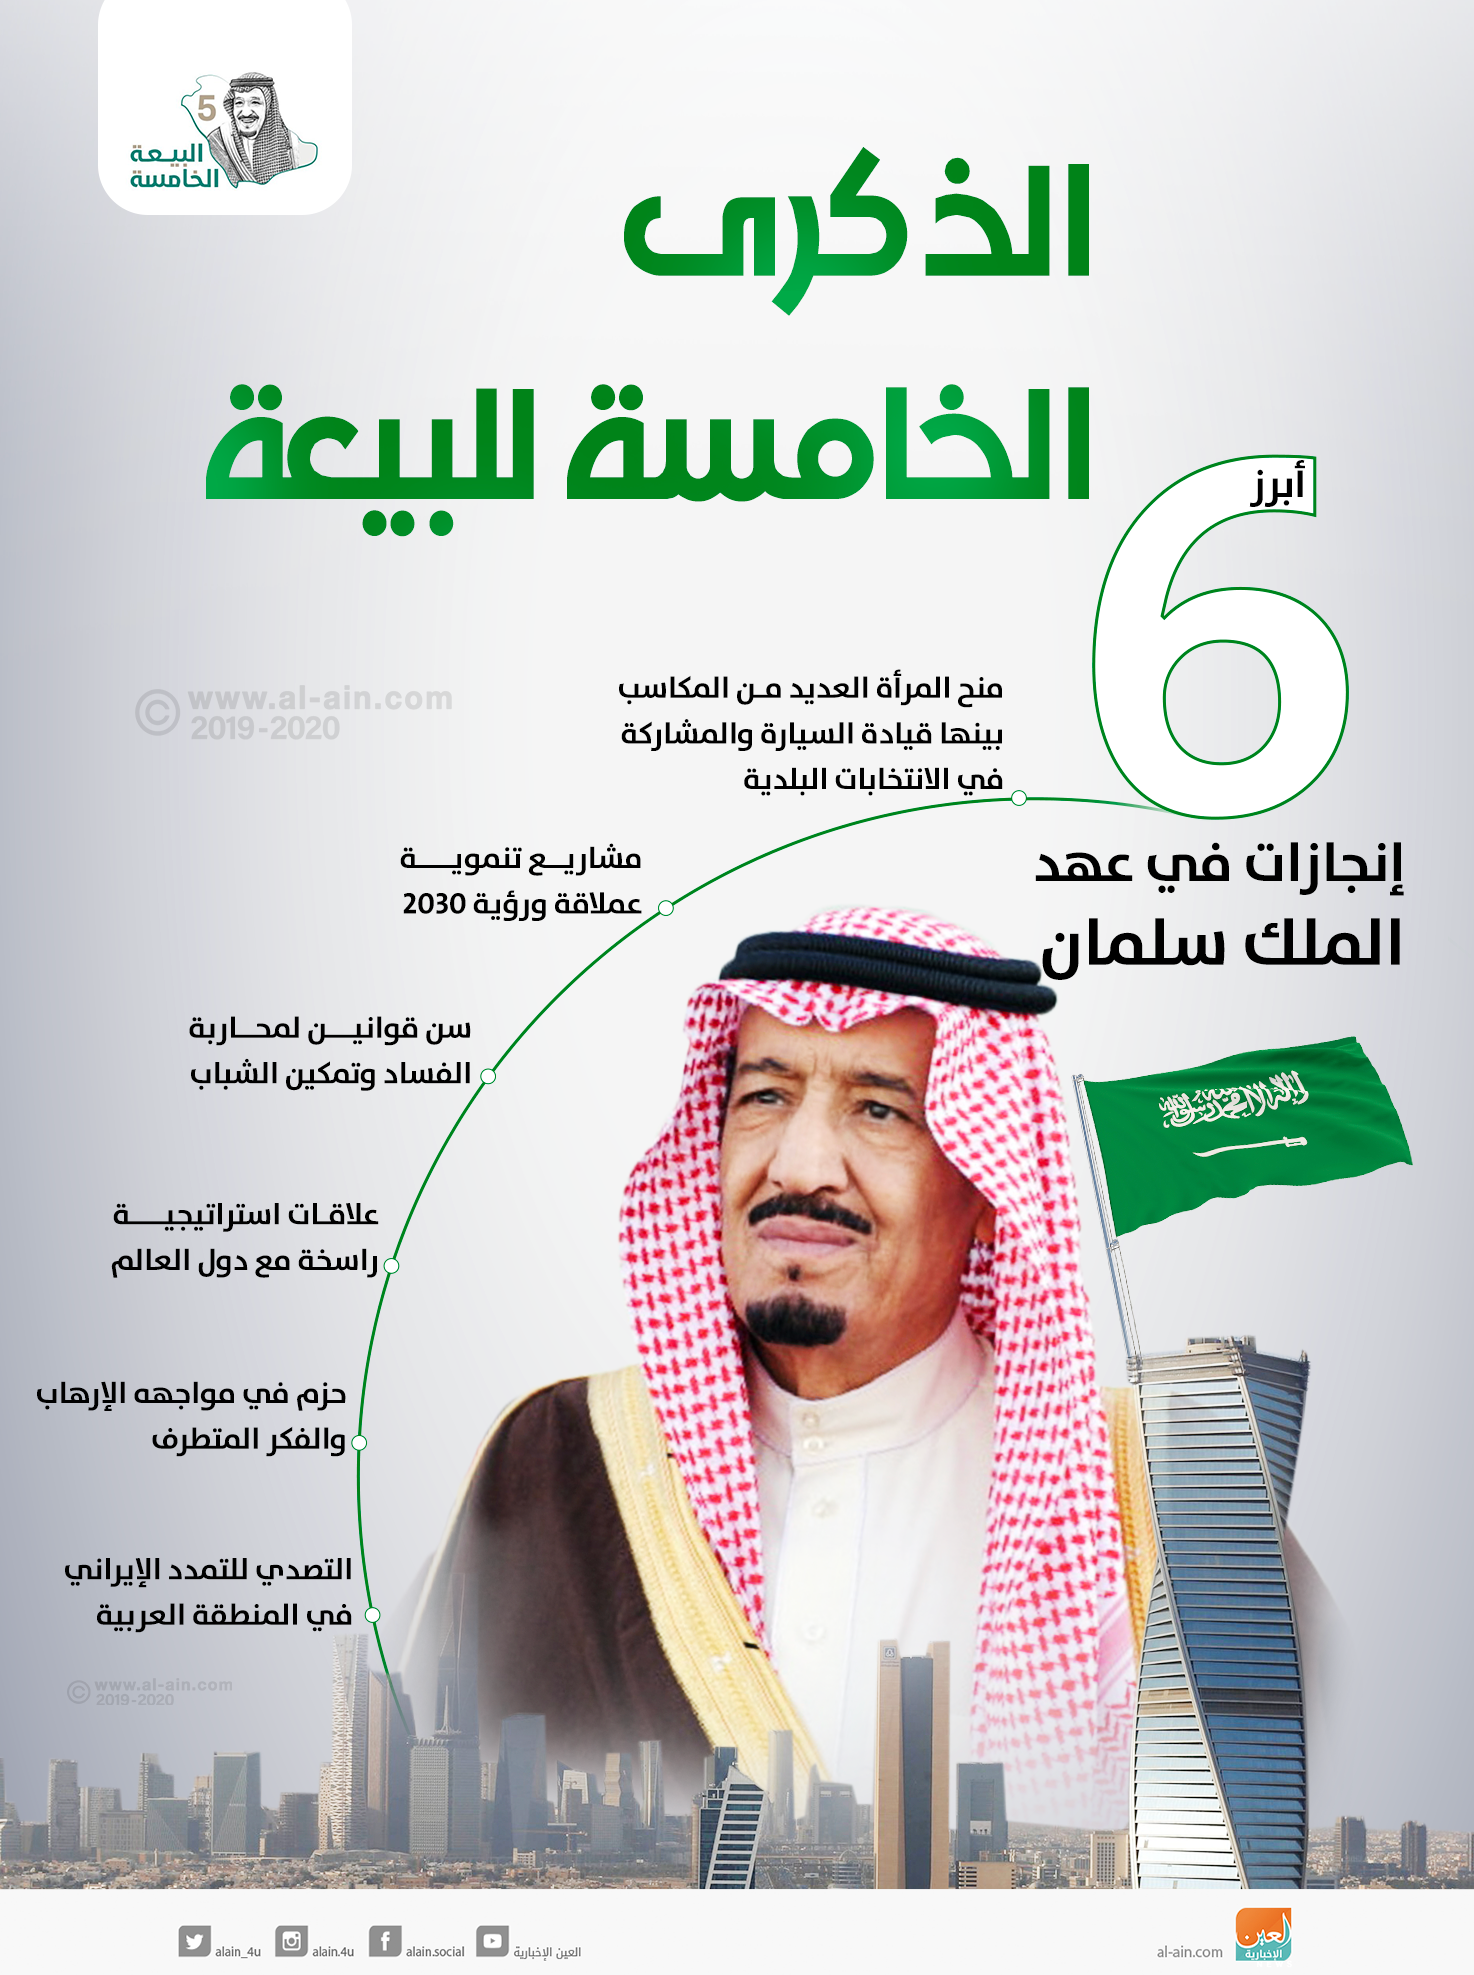 انجازات المملكة العربية السعودية في عهد الملك سلمان